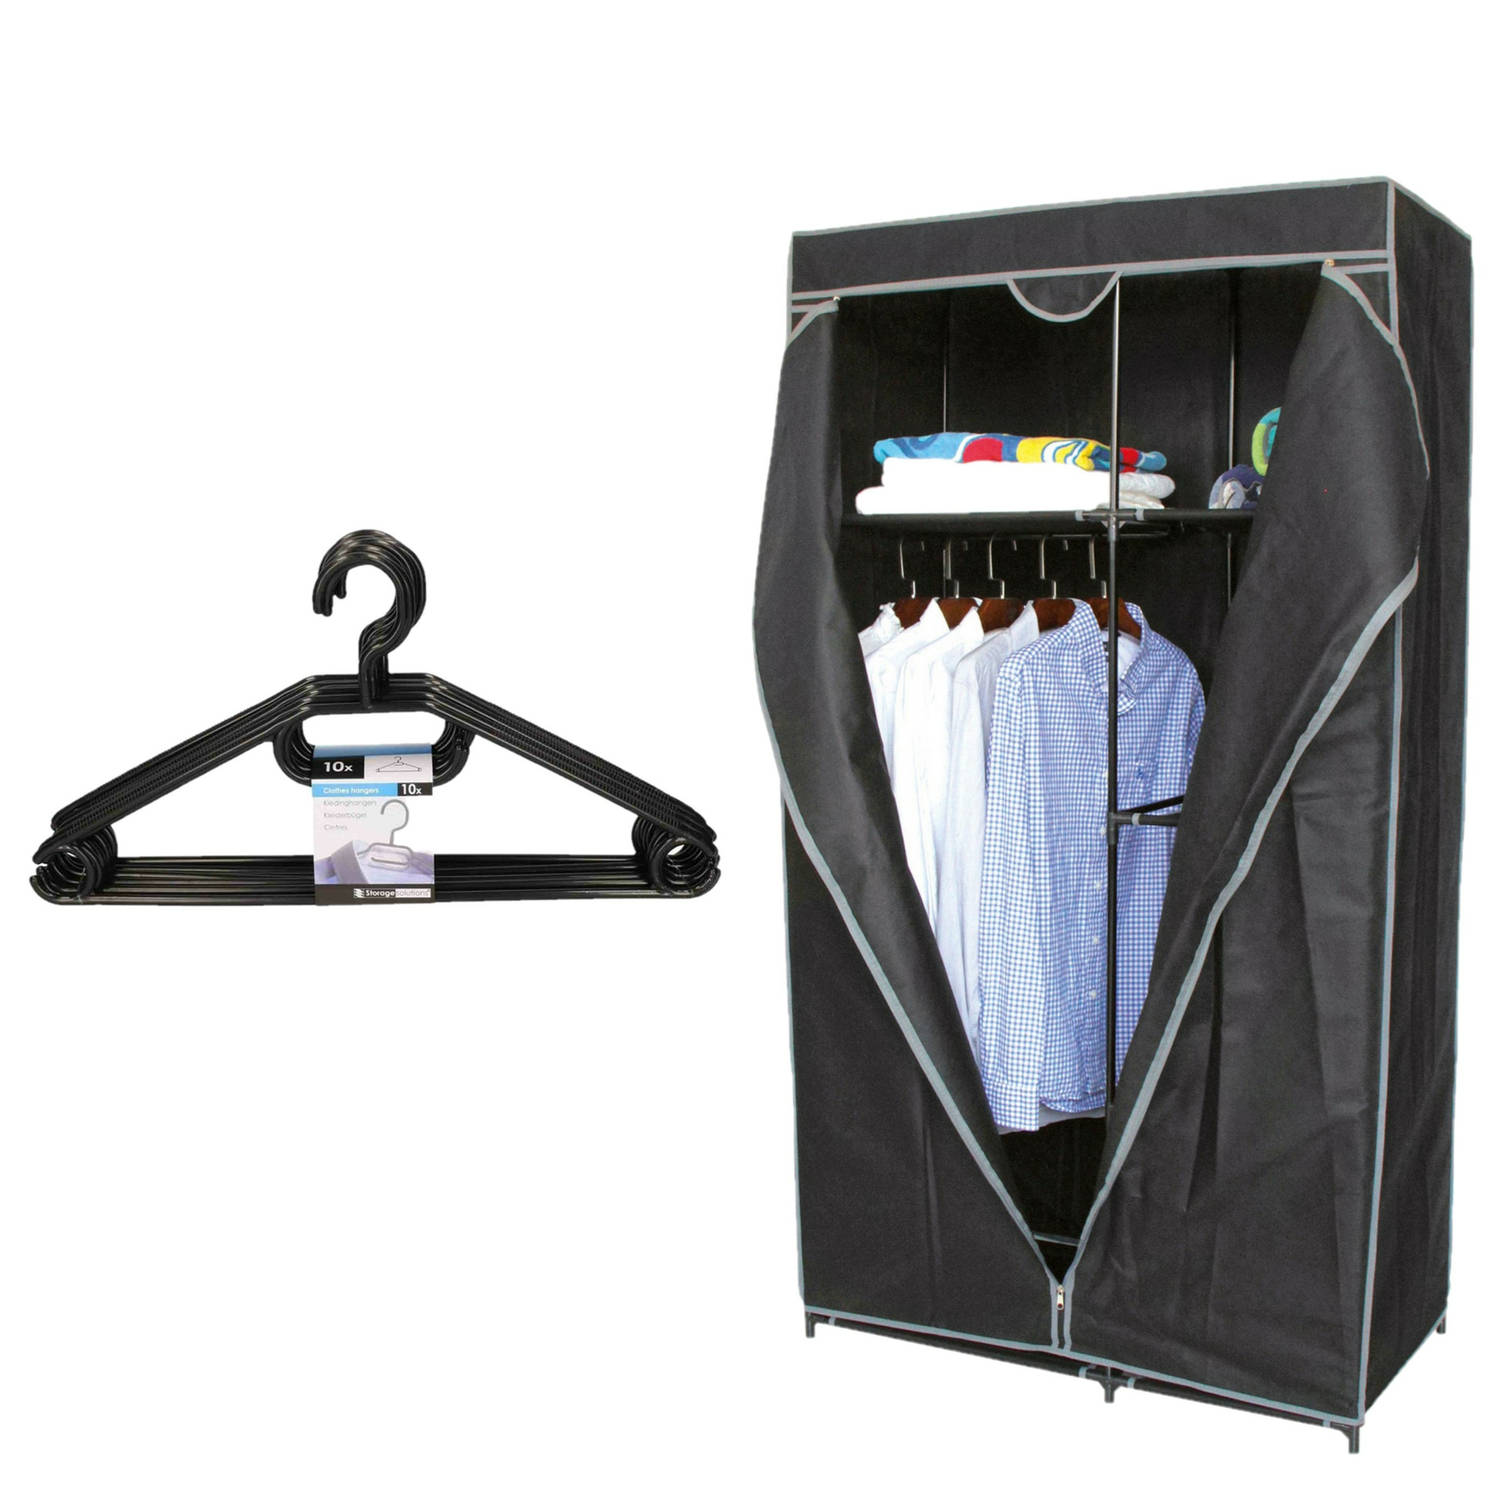 Mobiele kledingkast - 88 x 45 x 160 cm - incl. kledinghanger set 10x - Campingkledingkasten